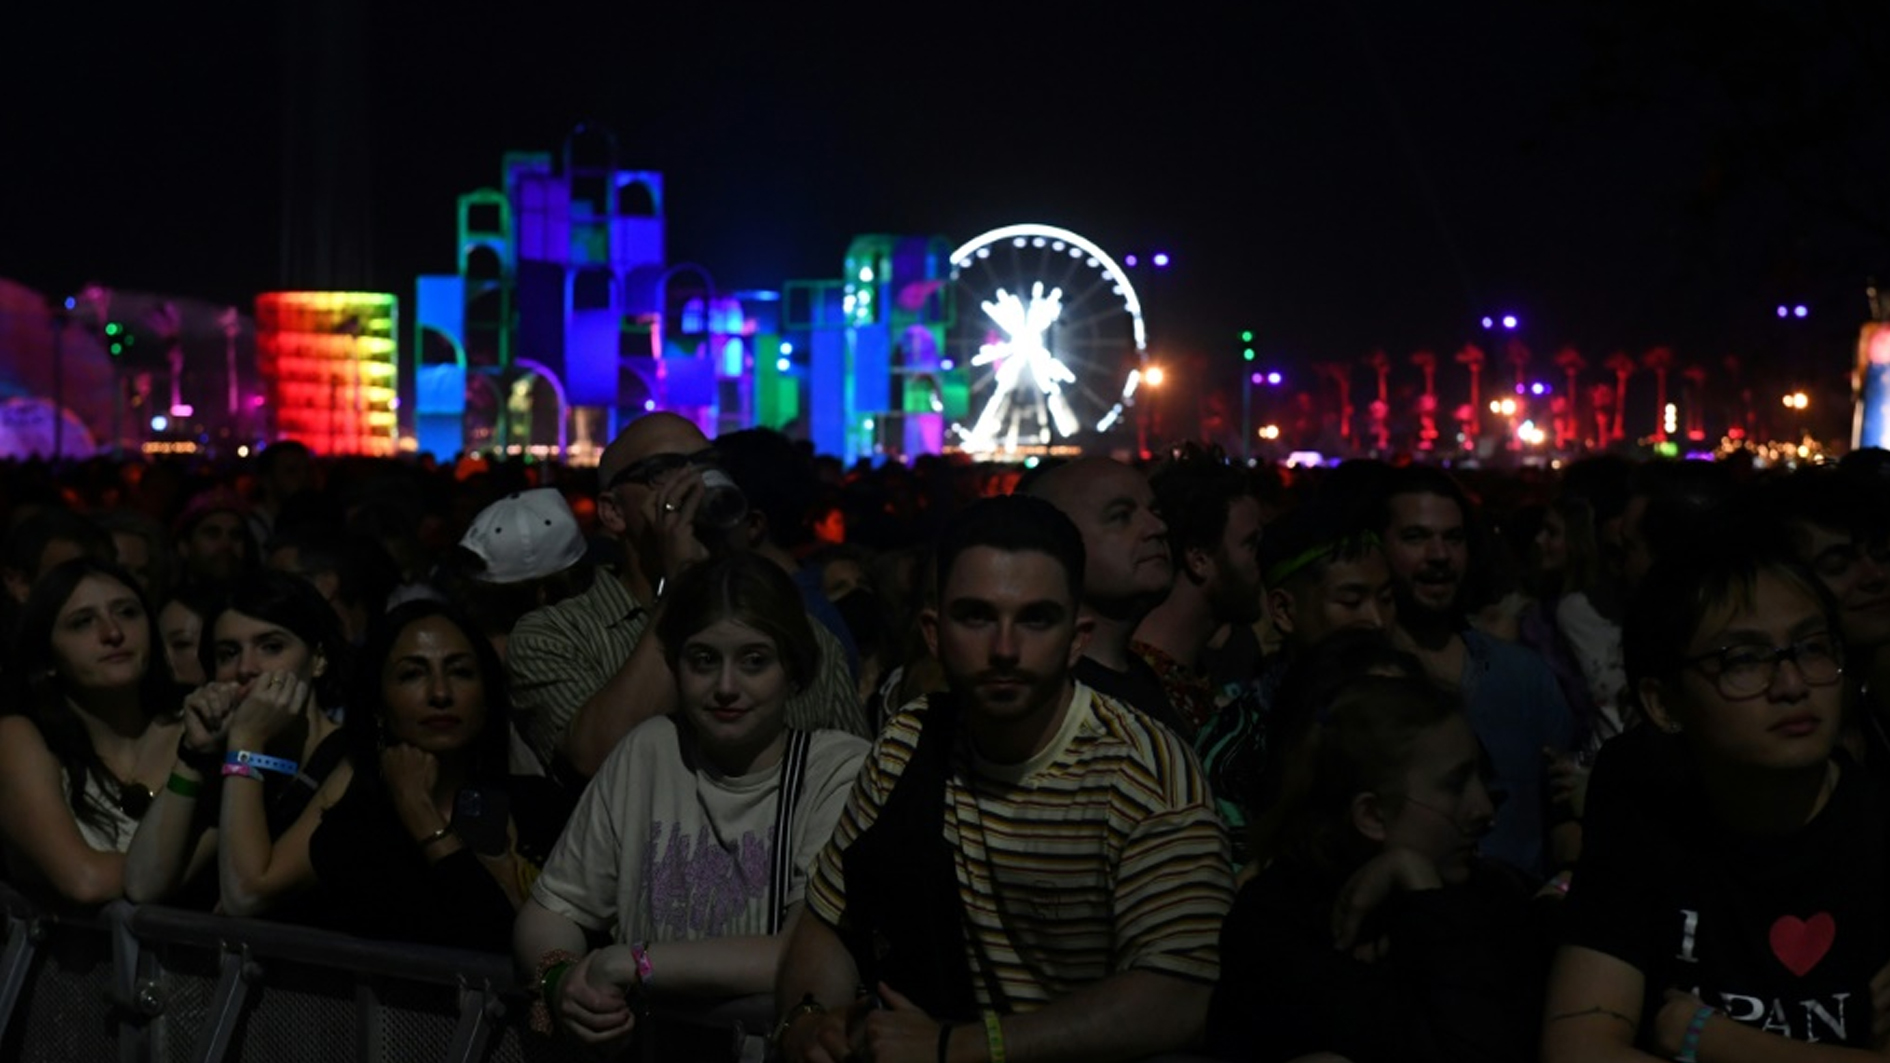 تعدد جنسيات غير مسبوق في مهرجان كوتشيلا الموسيقي